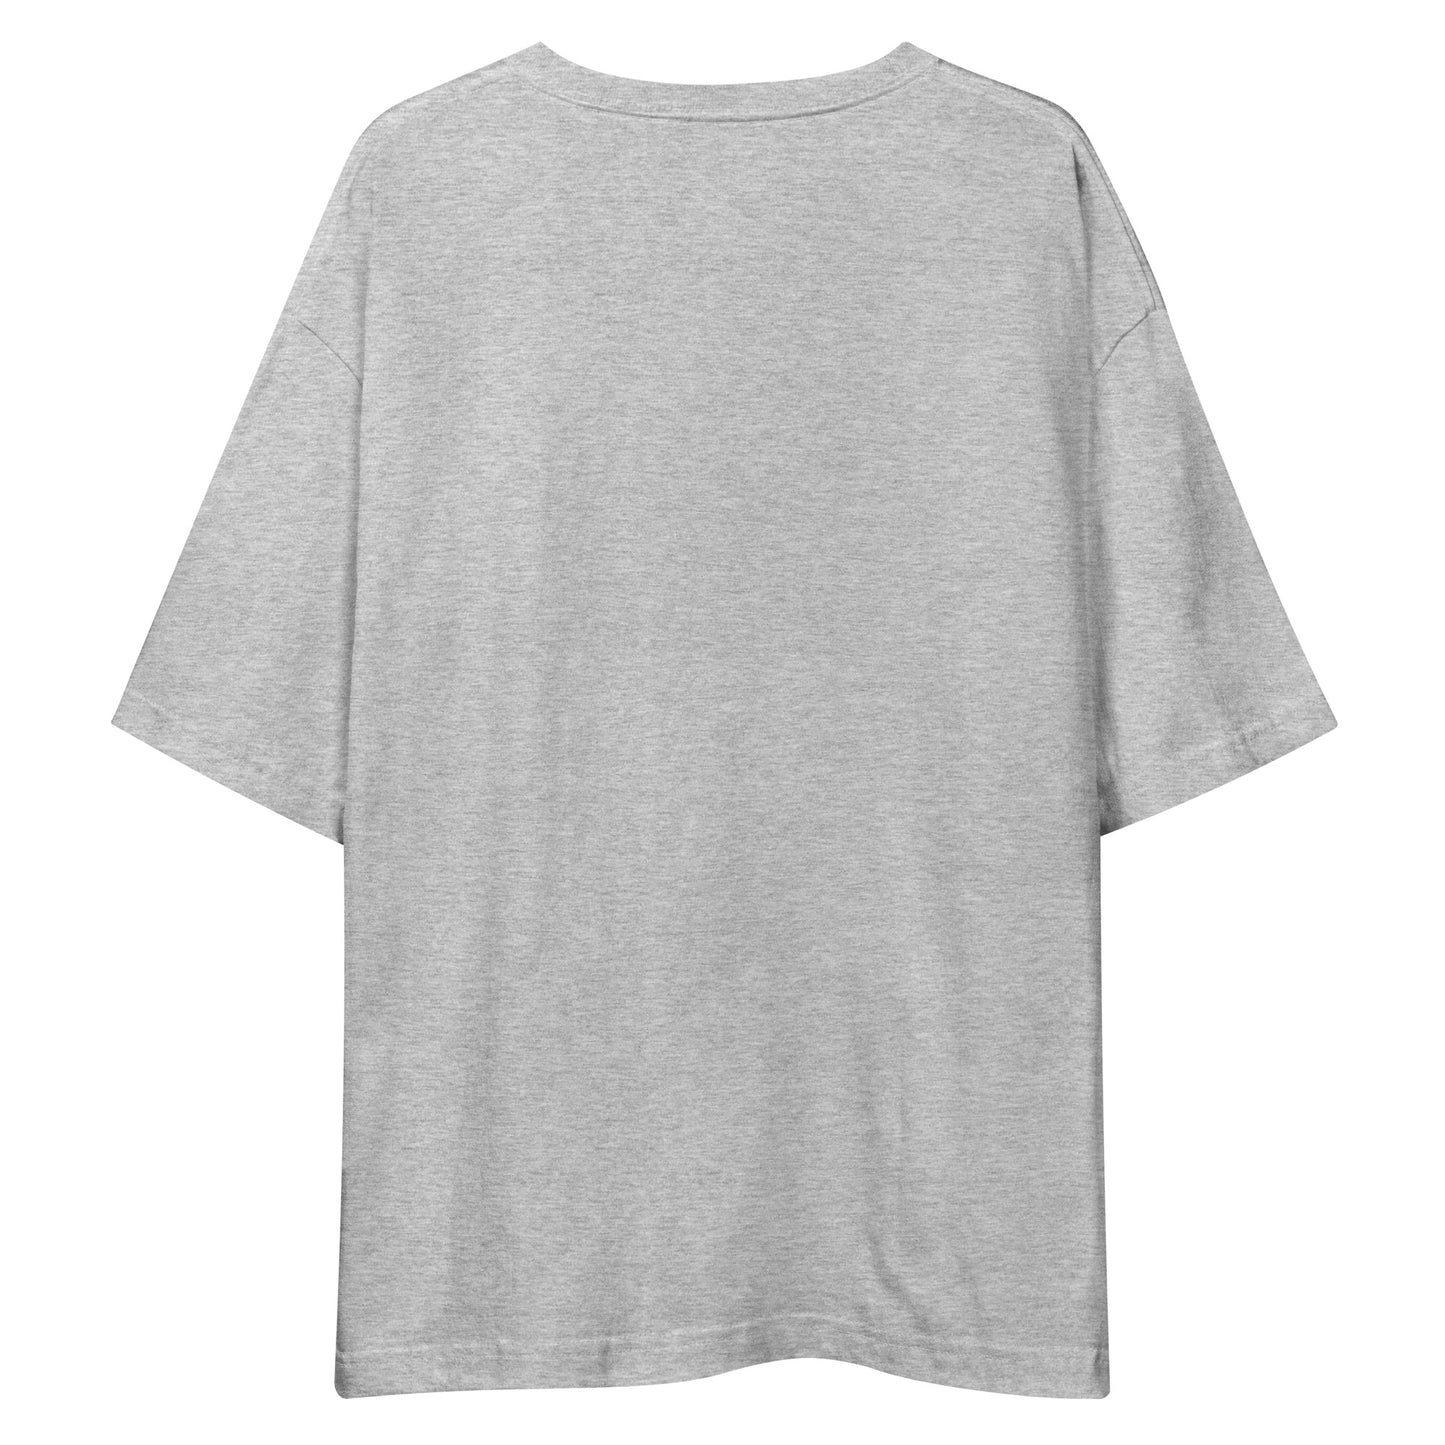 E227 - Tシャツ/ビッグシルエット(ユニバーサルジャンプ/女子 : グレー/チャコール)